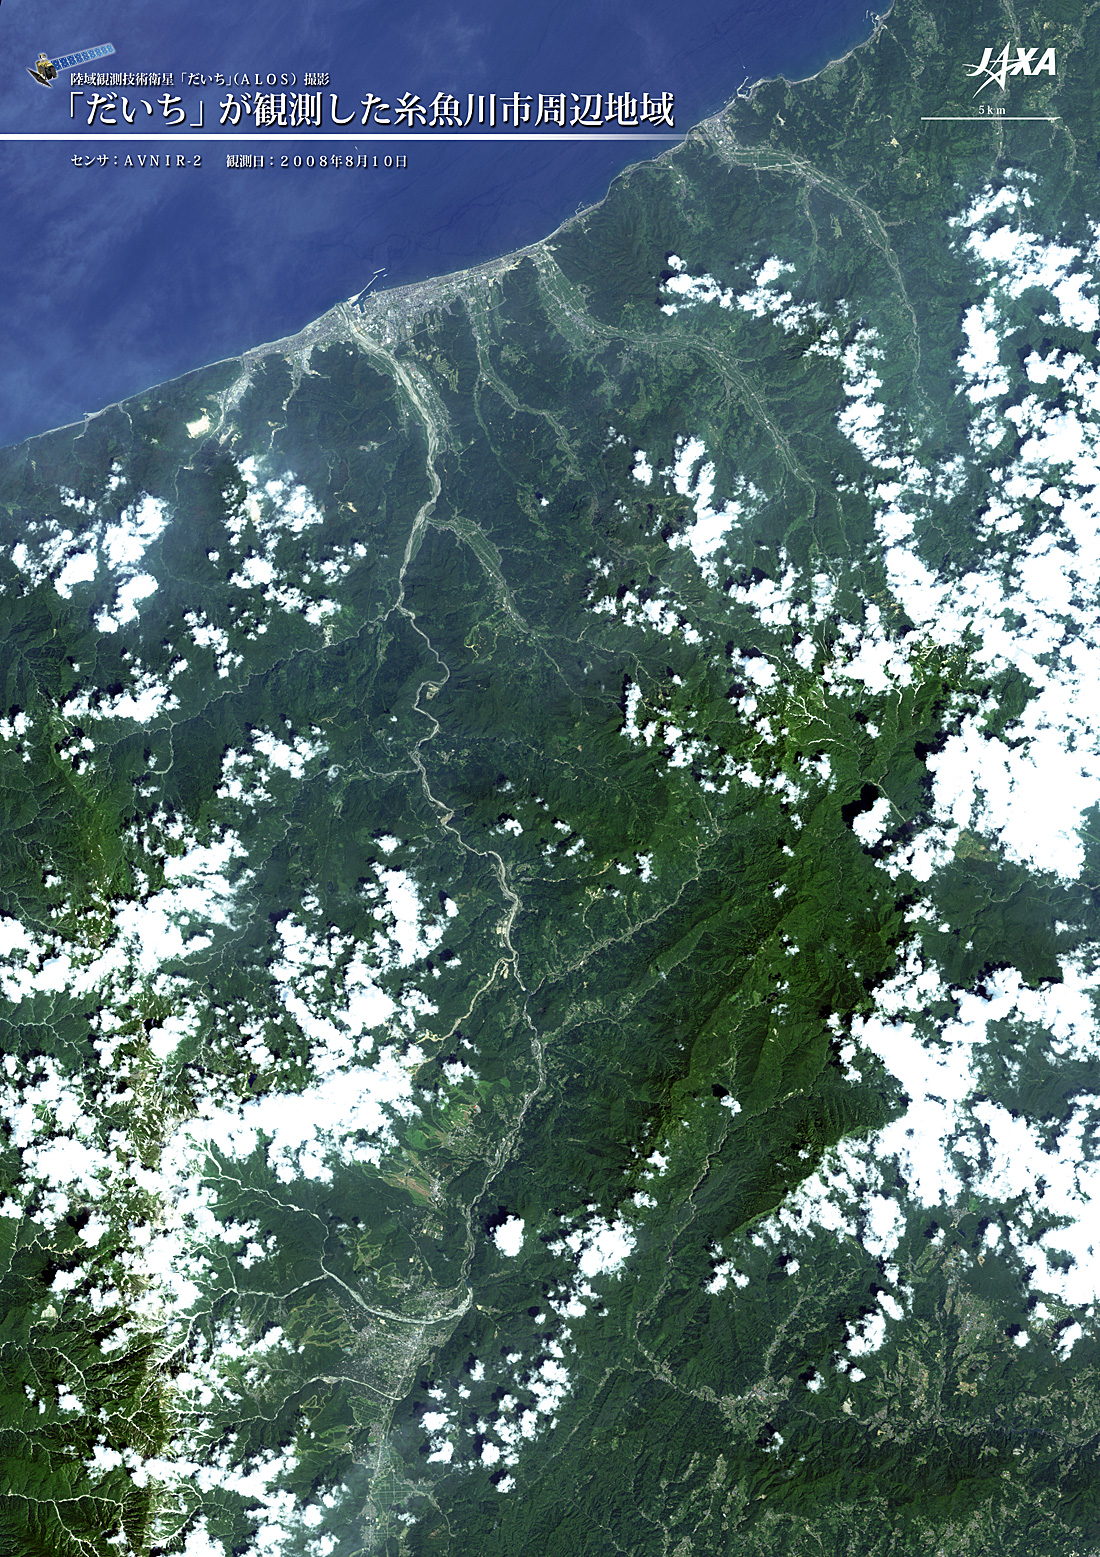 だいちから見た日本の都市 糸魚川市周辺:衛星画像（ポスター仕上げ）